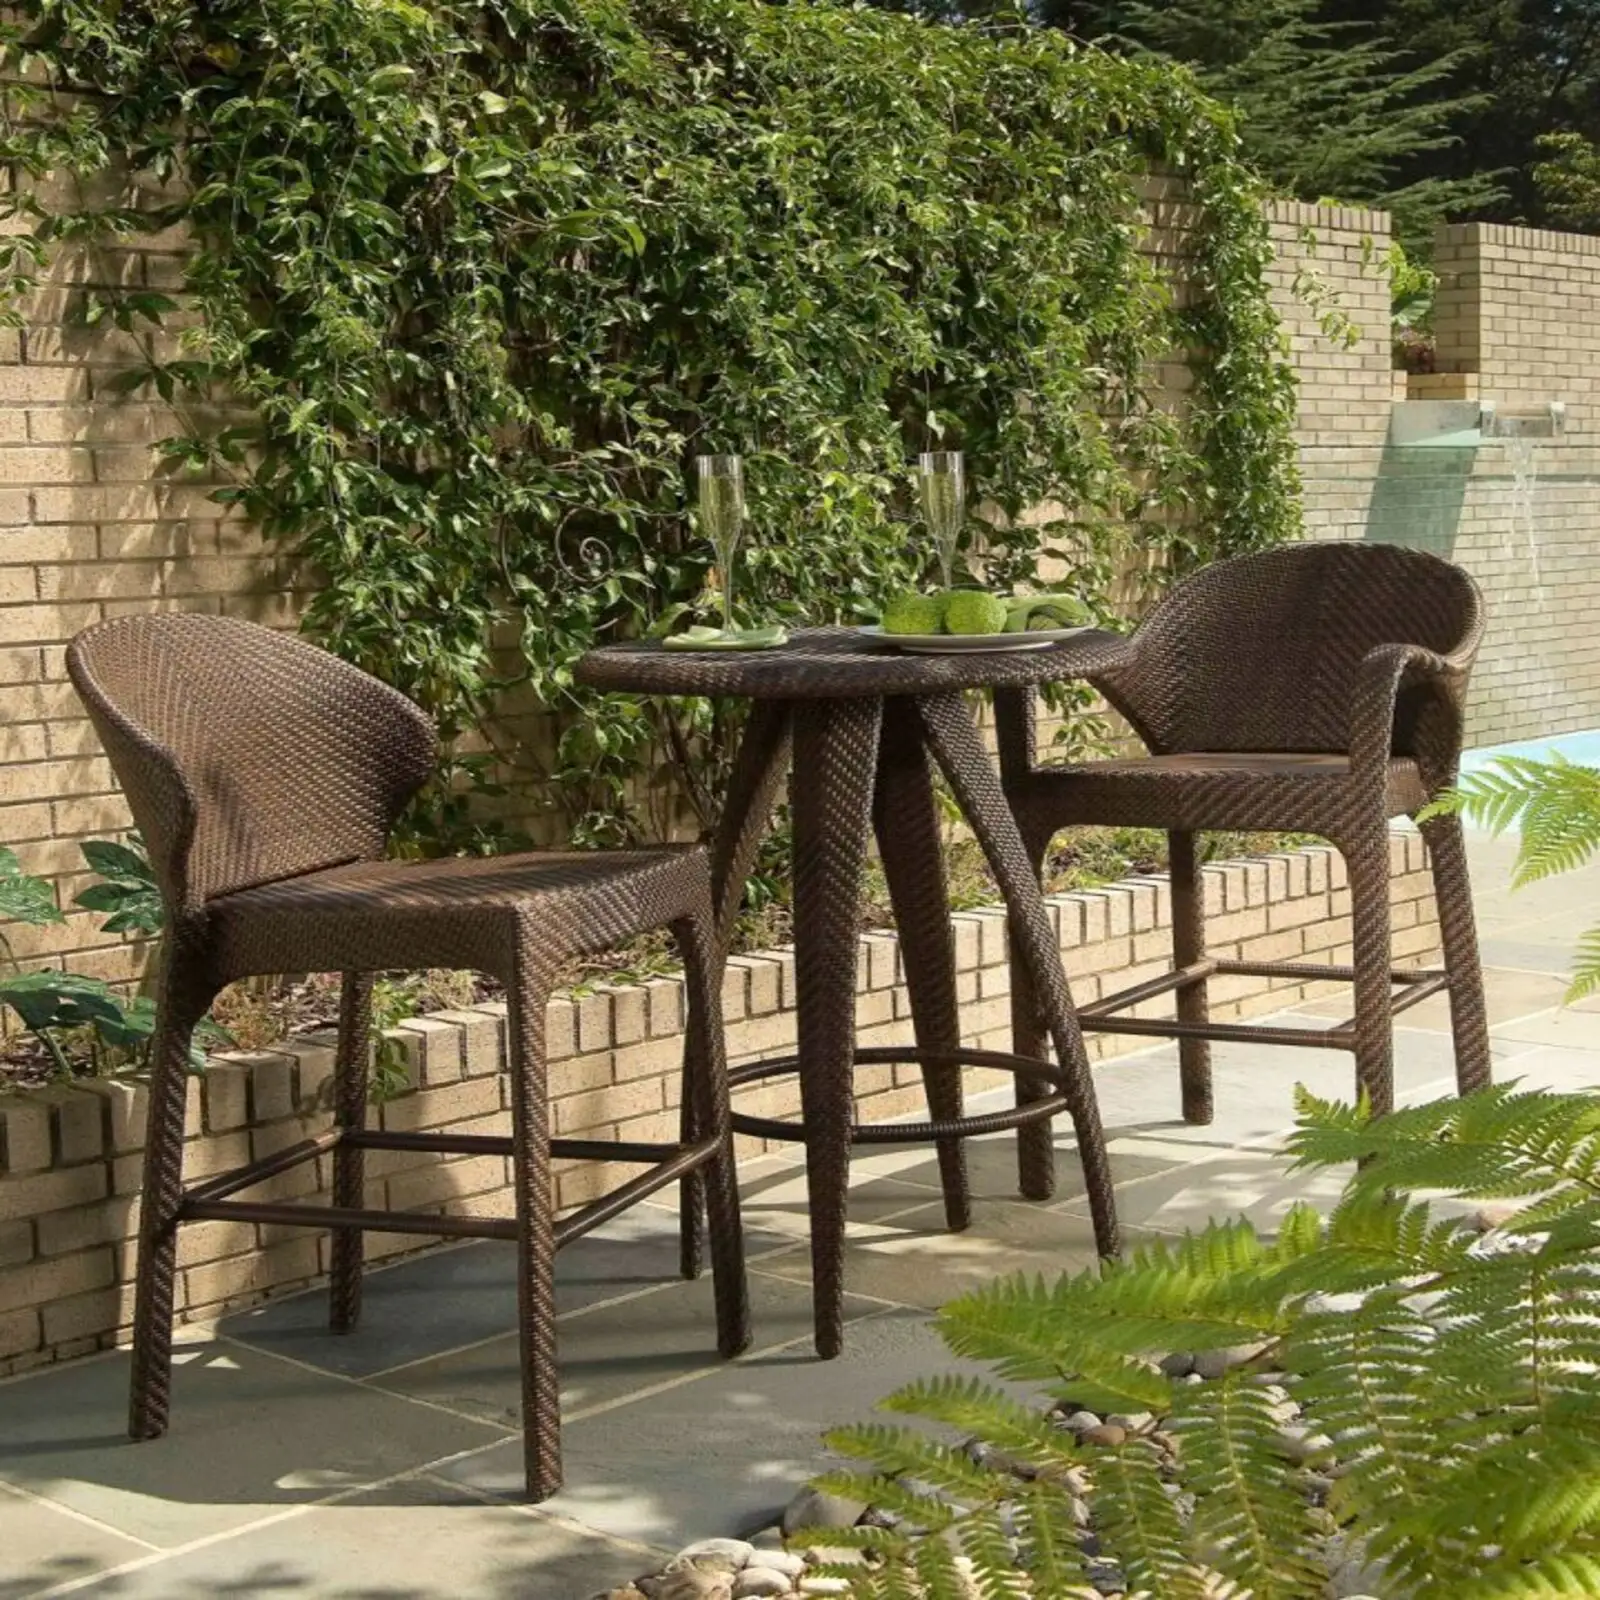 Schöne und elegante Gartenmöbel Set mit hohen Doppels tühlen Rattan stühle kombiniert mit hohen runden Tischen